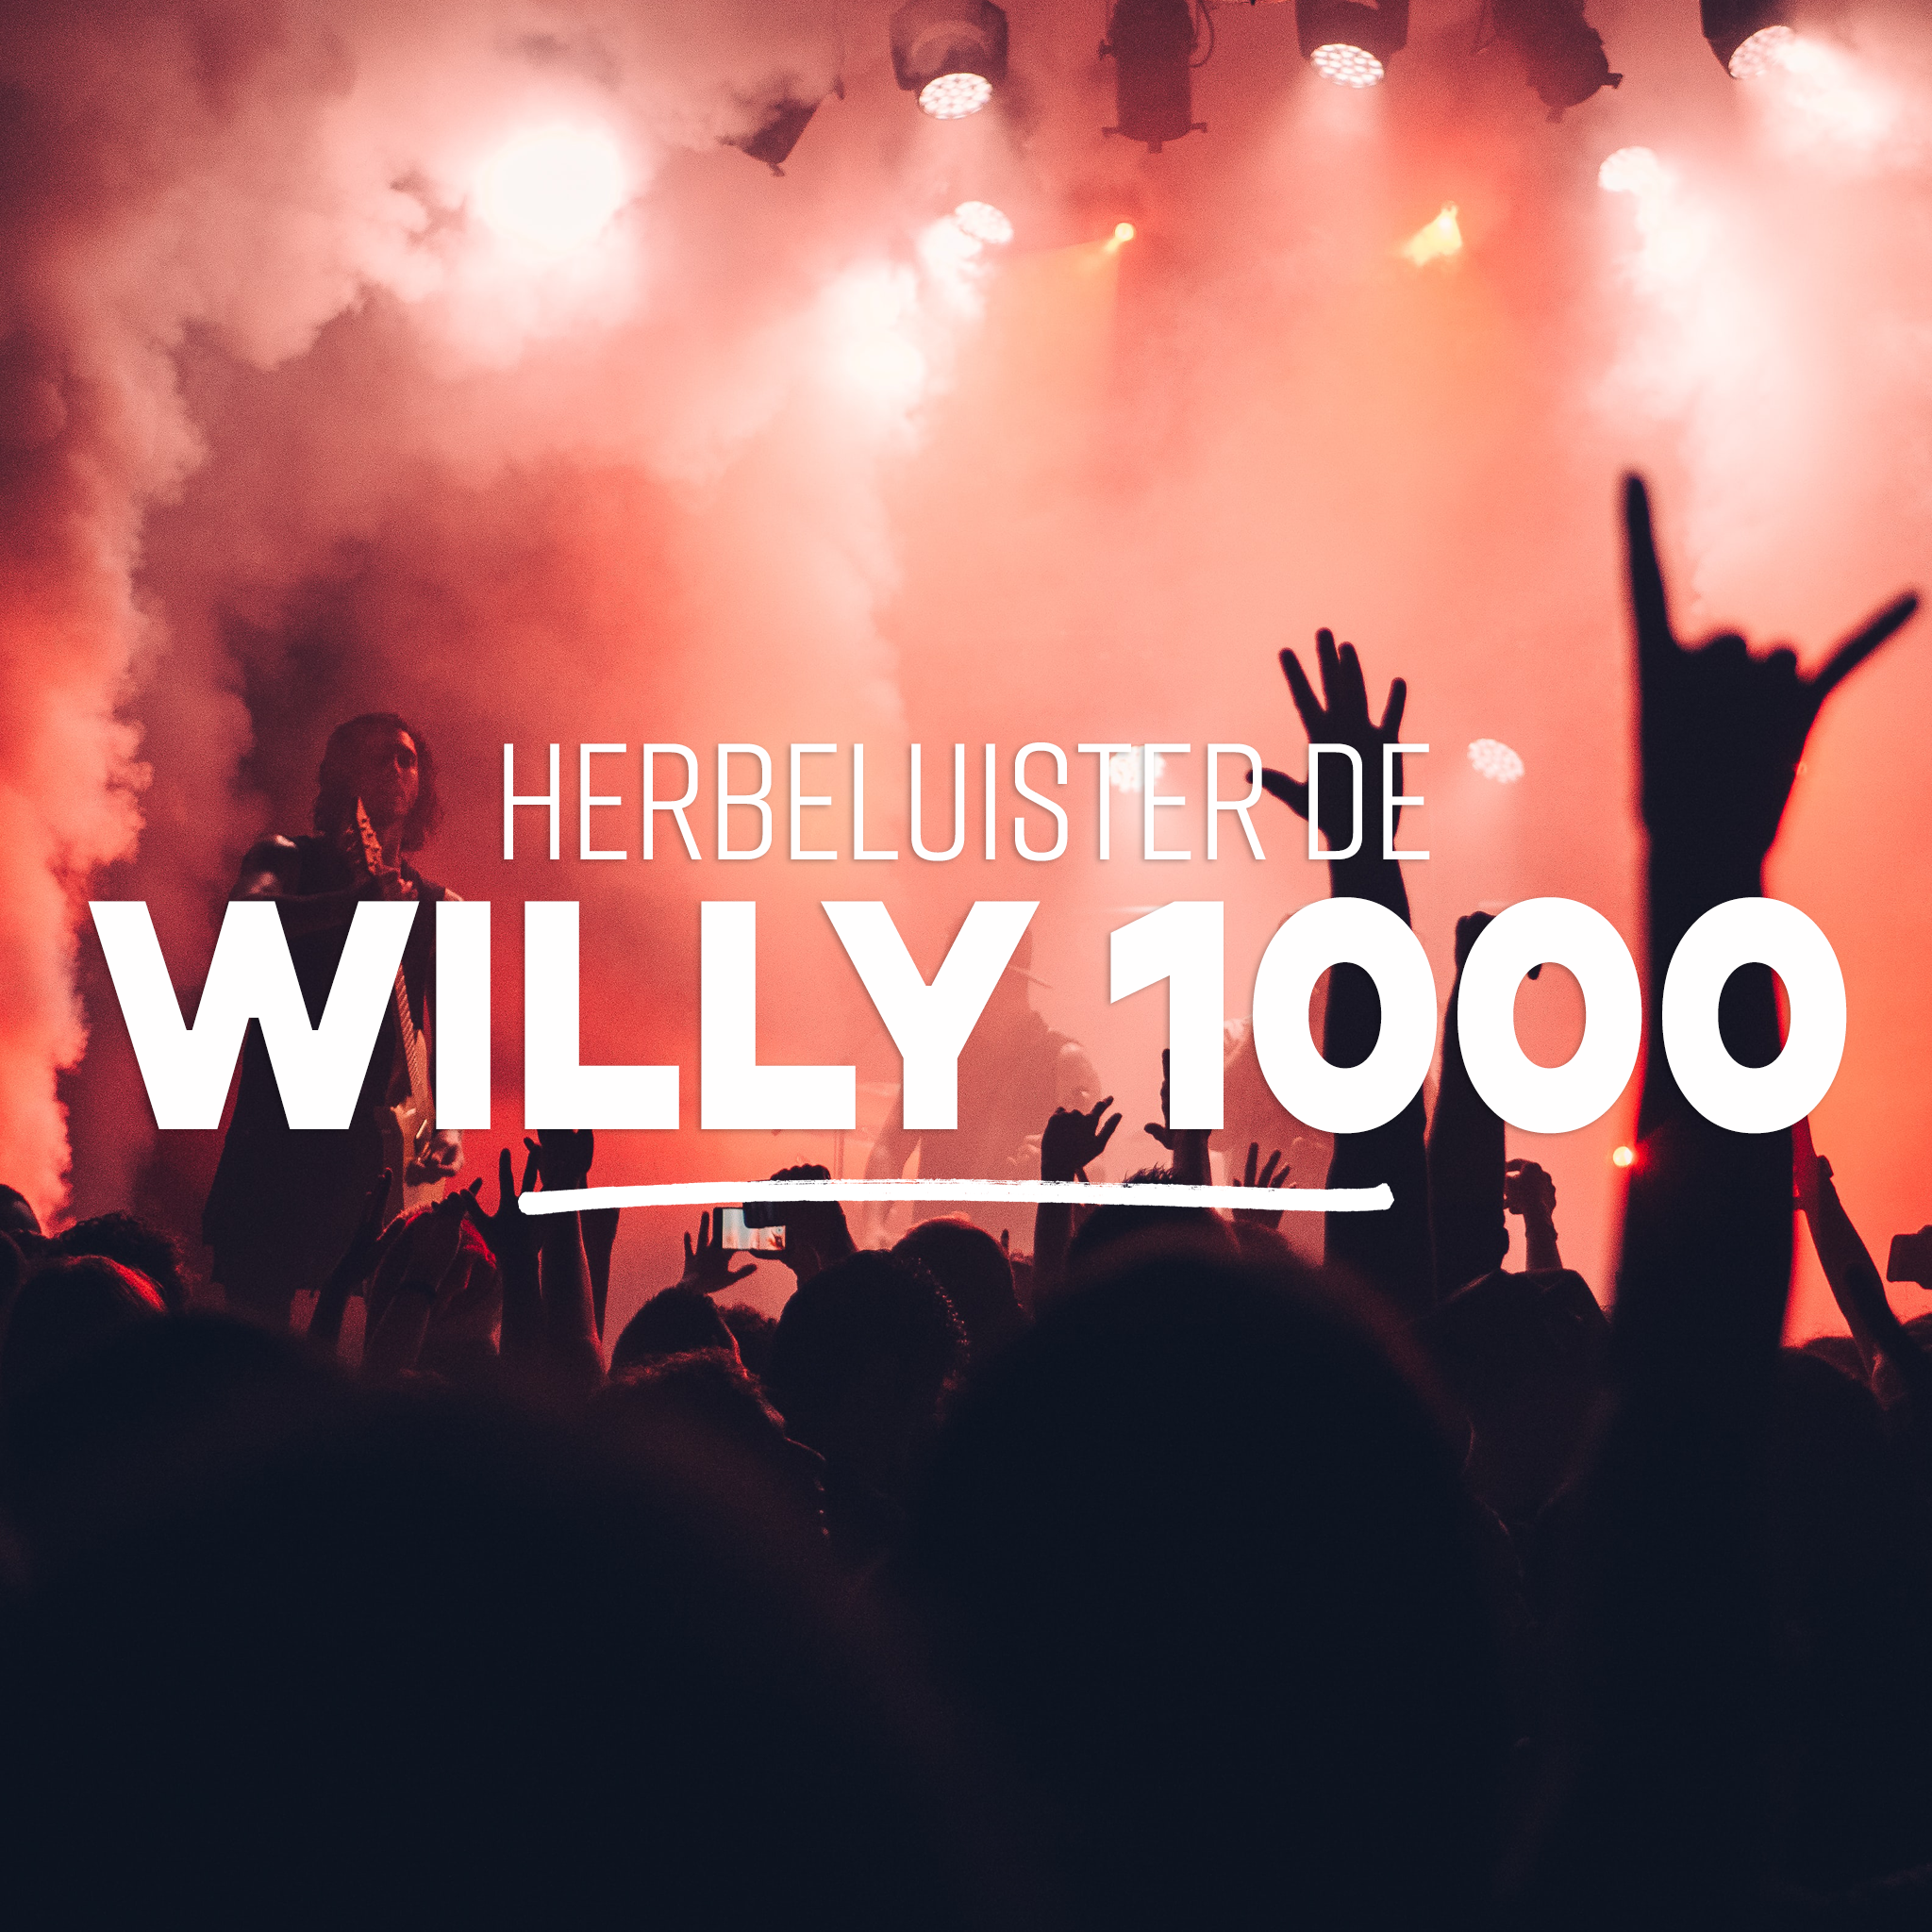 Herbeluister de willy 1000